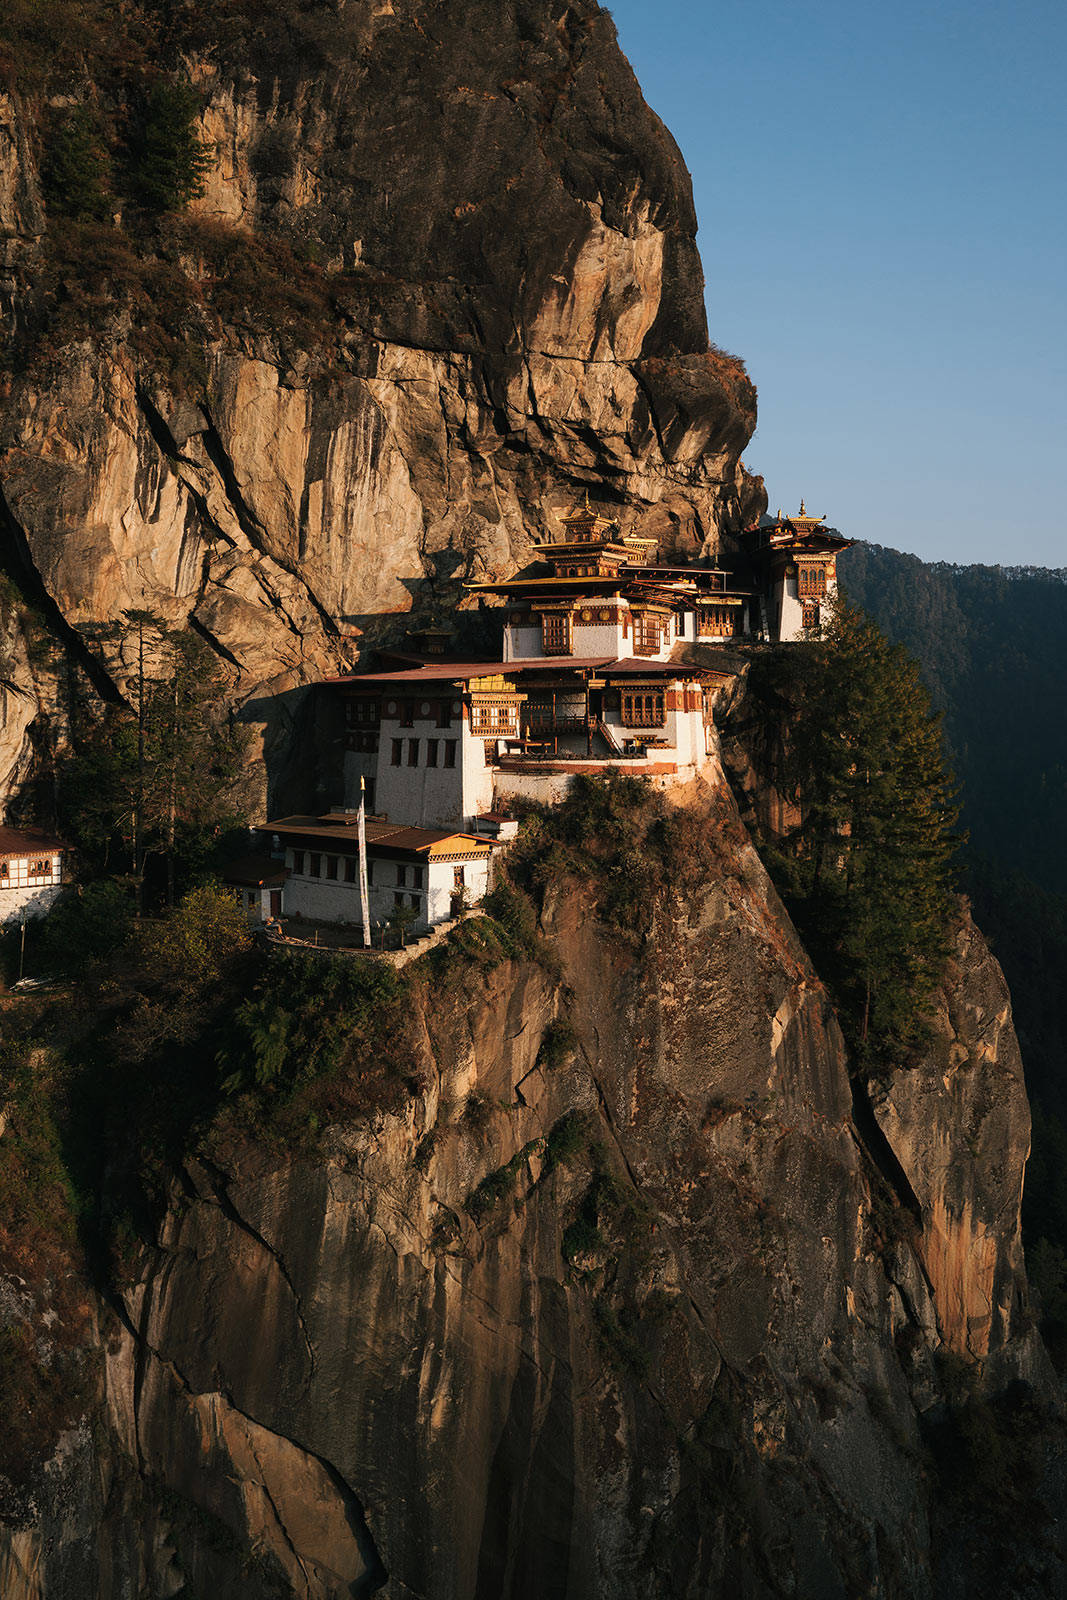 不丹旅游局局长dorji dhradhul说:不丹的灵性遗产与这里的自然美景有